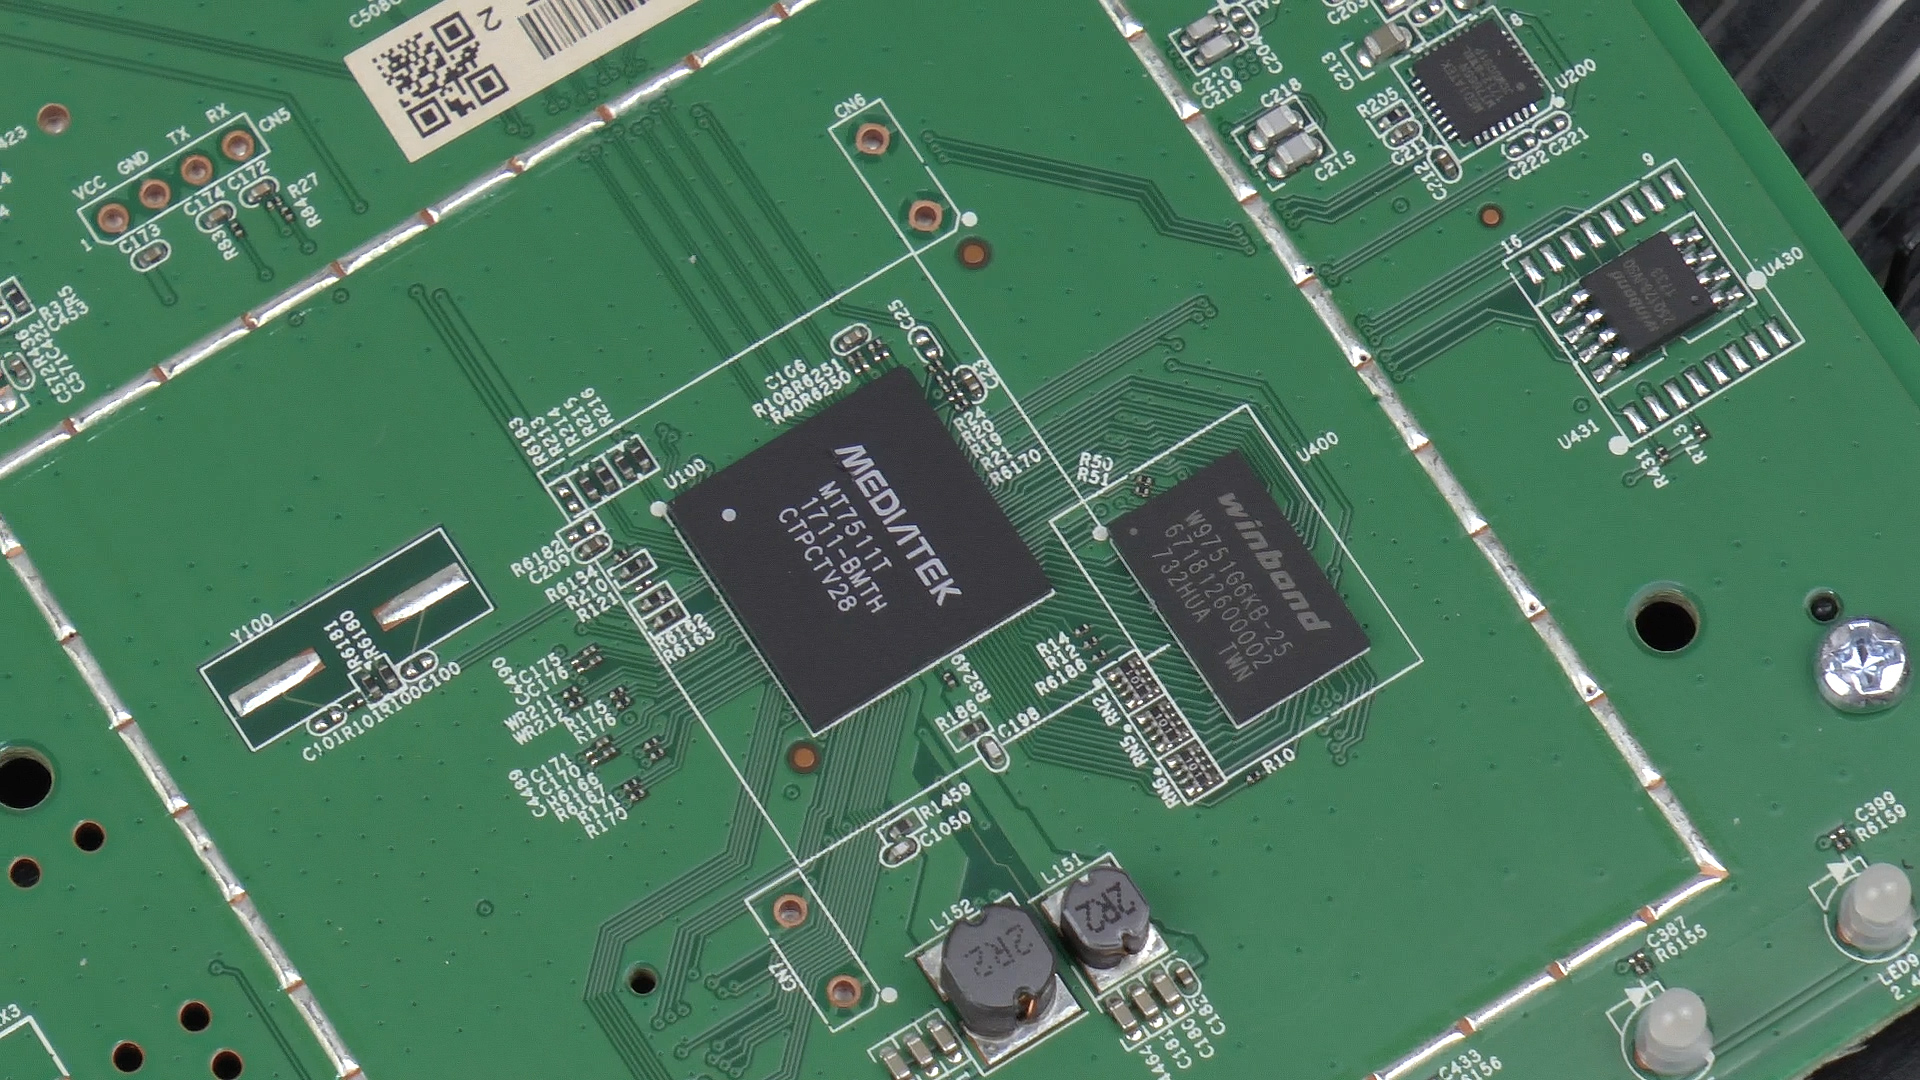 Asus DSL-AC51 modem/router incelemesi 'F/P ürünü mü, değil mi?'